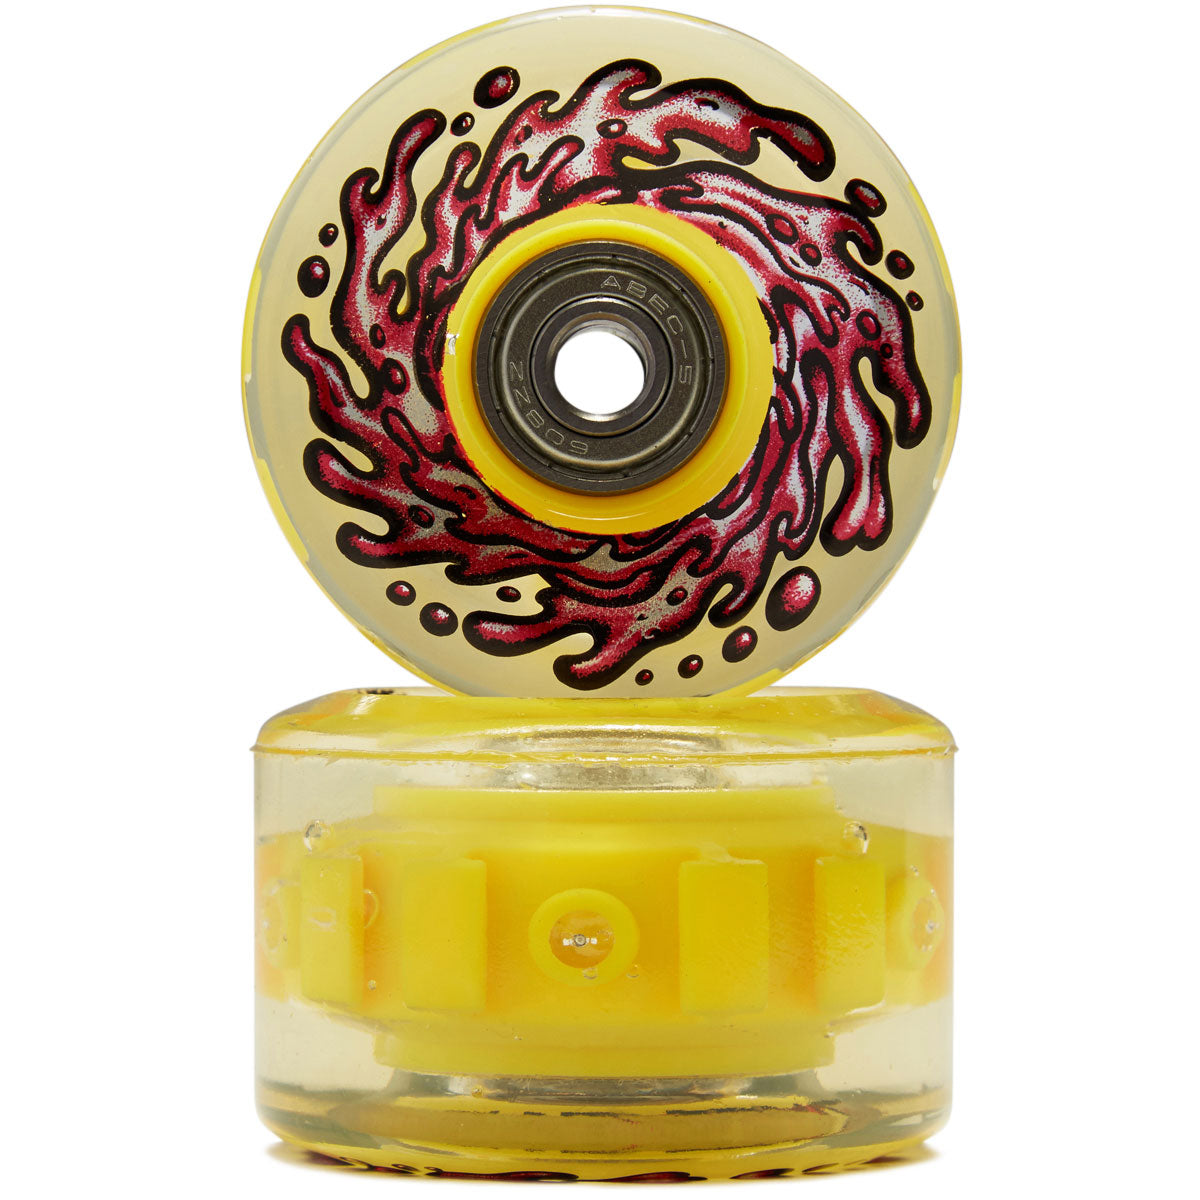 Slime Balls Light Ups OG Slime 78a Skateboard Wheels - Red/Yellow - 60mm image 2